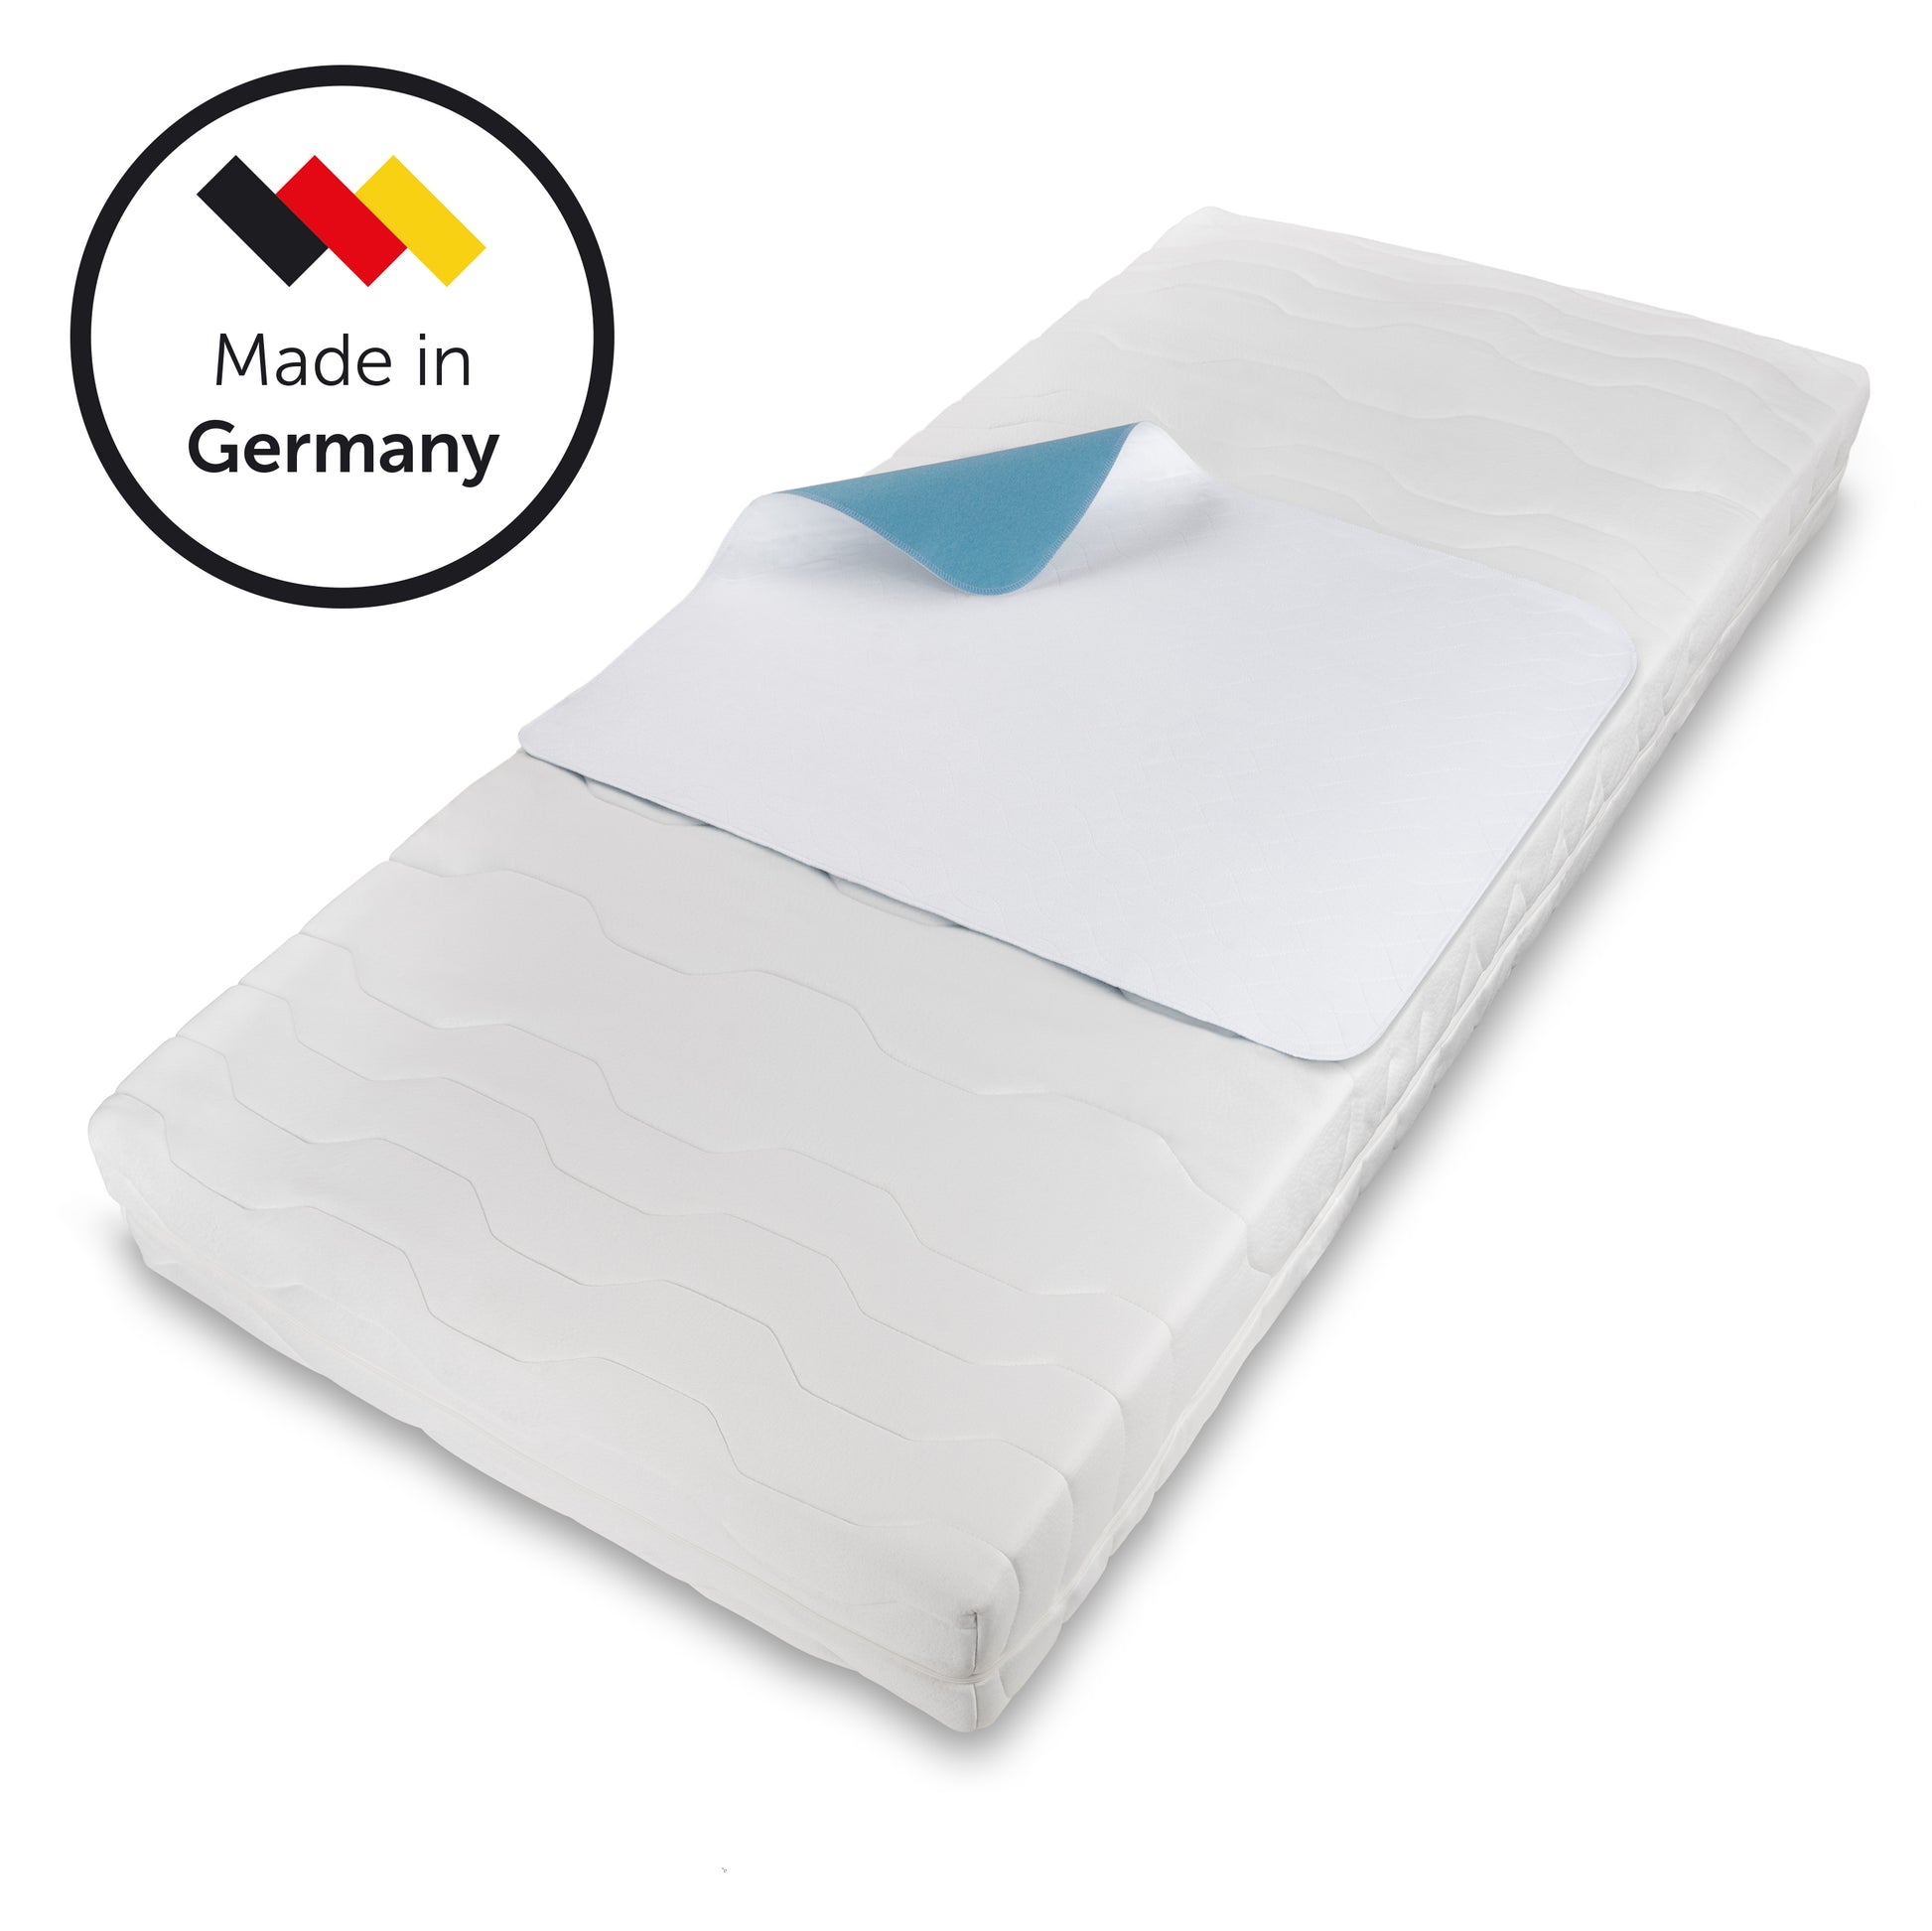 Matratzenauflage auf einer Matratze passend für Standardbetten gekennzeichnet mit 'Made in Germany' für Qualitätsbewusstsein.